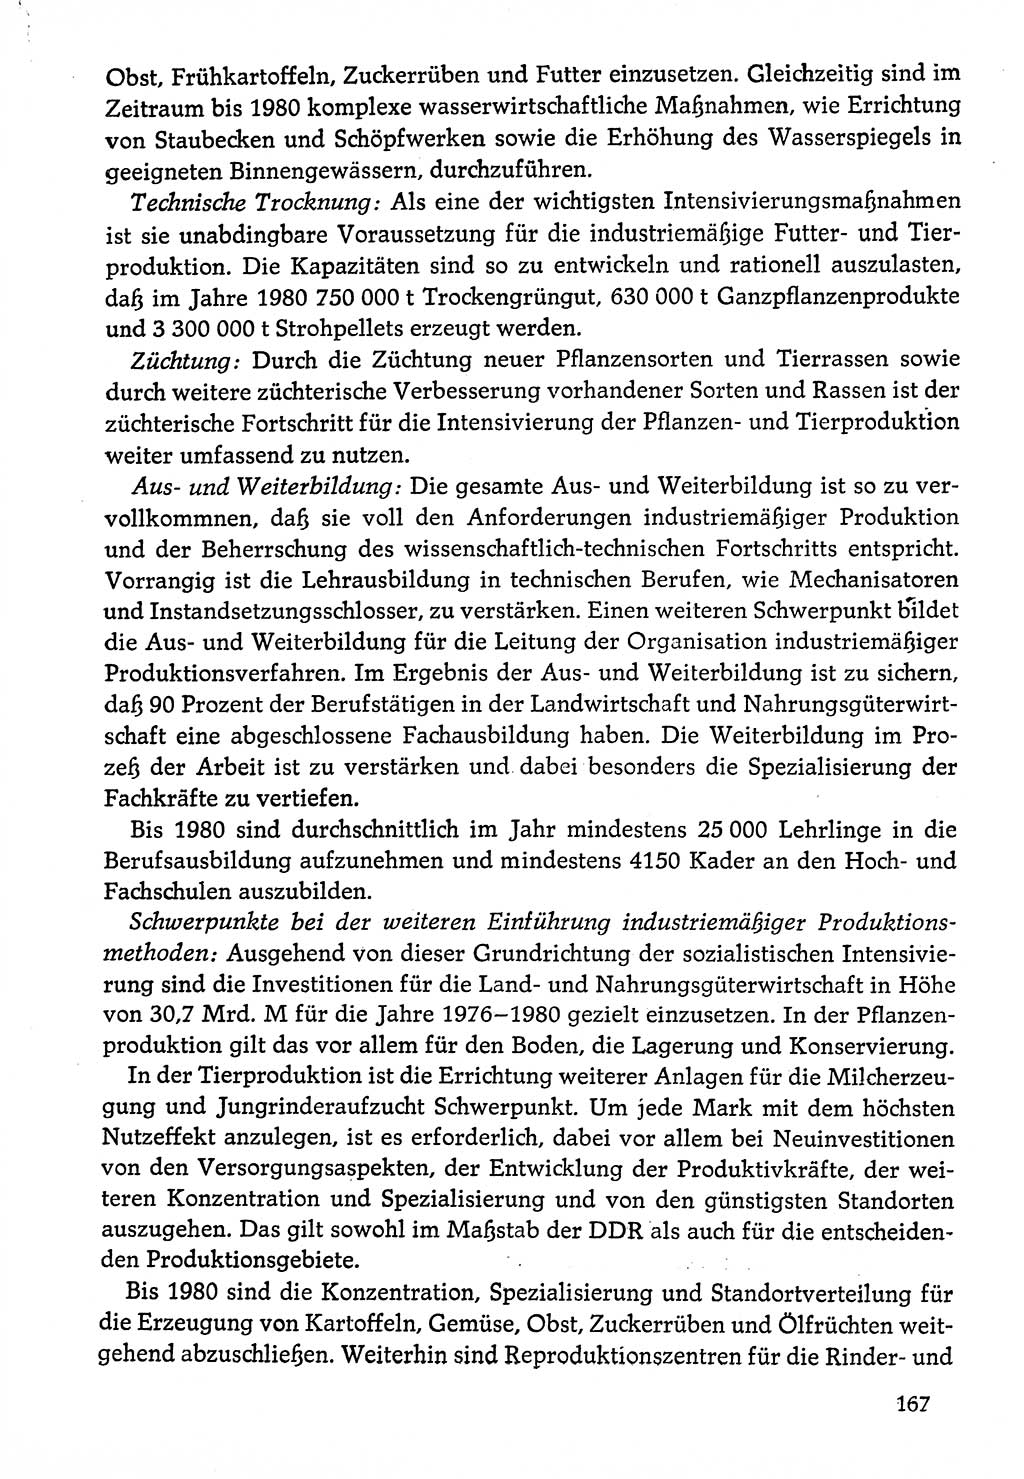 Dokumente der Sozialistischen Einheitspartei Deutschlands (SED) [Deutsche Demokratische Republik (DDR)] 1976-1977, Seite 167 (Dok. SED DDR 1976-1977, S. 167)